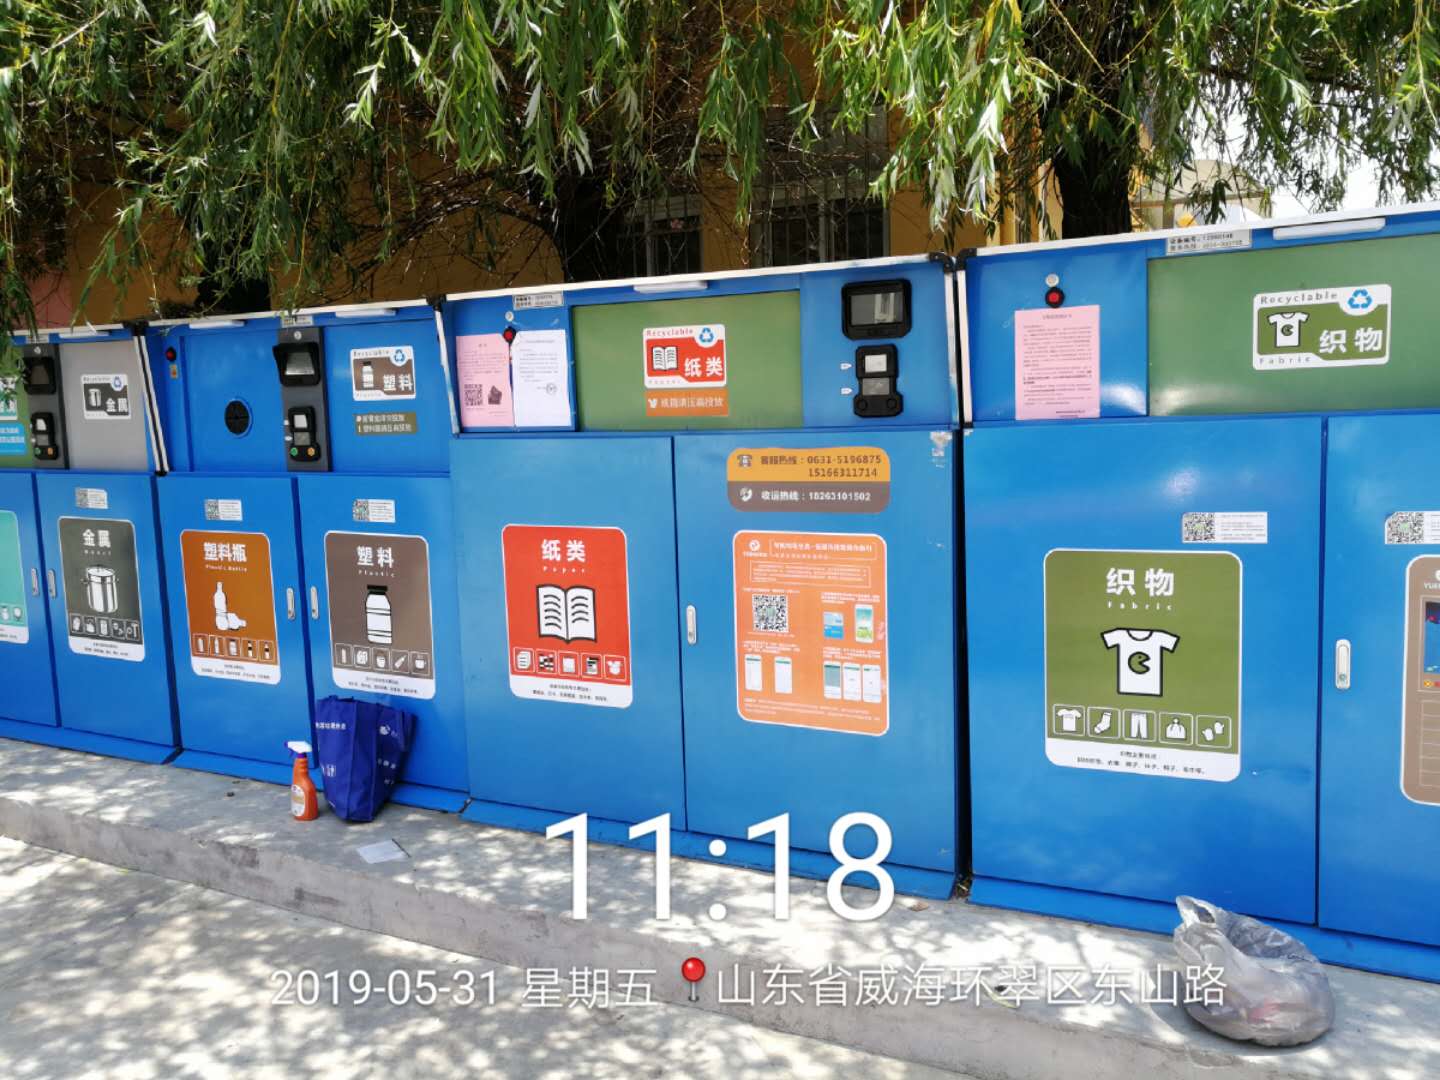 垃圾分类垃圾箱,长春垃圾分类垃圾箱,垃圾分类垃圾箱功能,长春垃圾分类垃圾箱功能